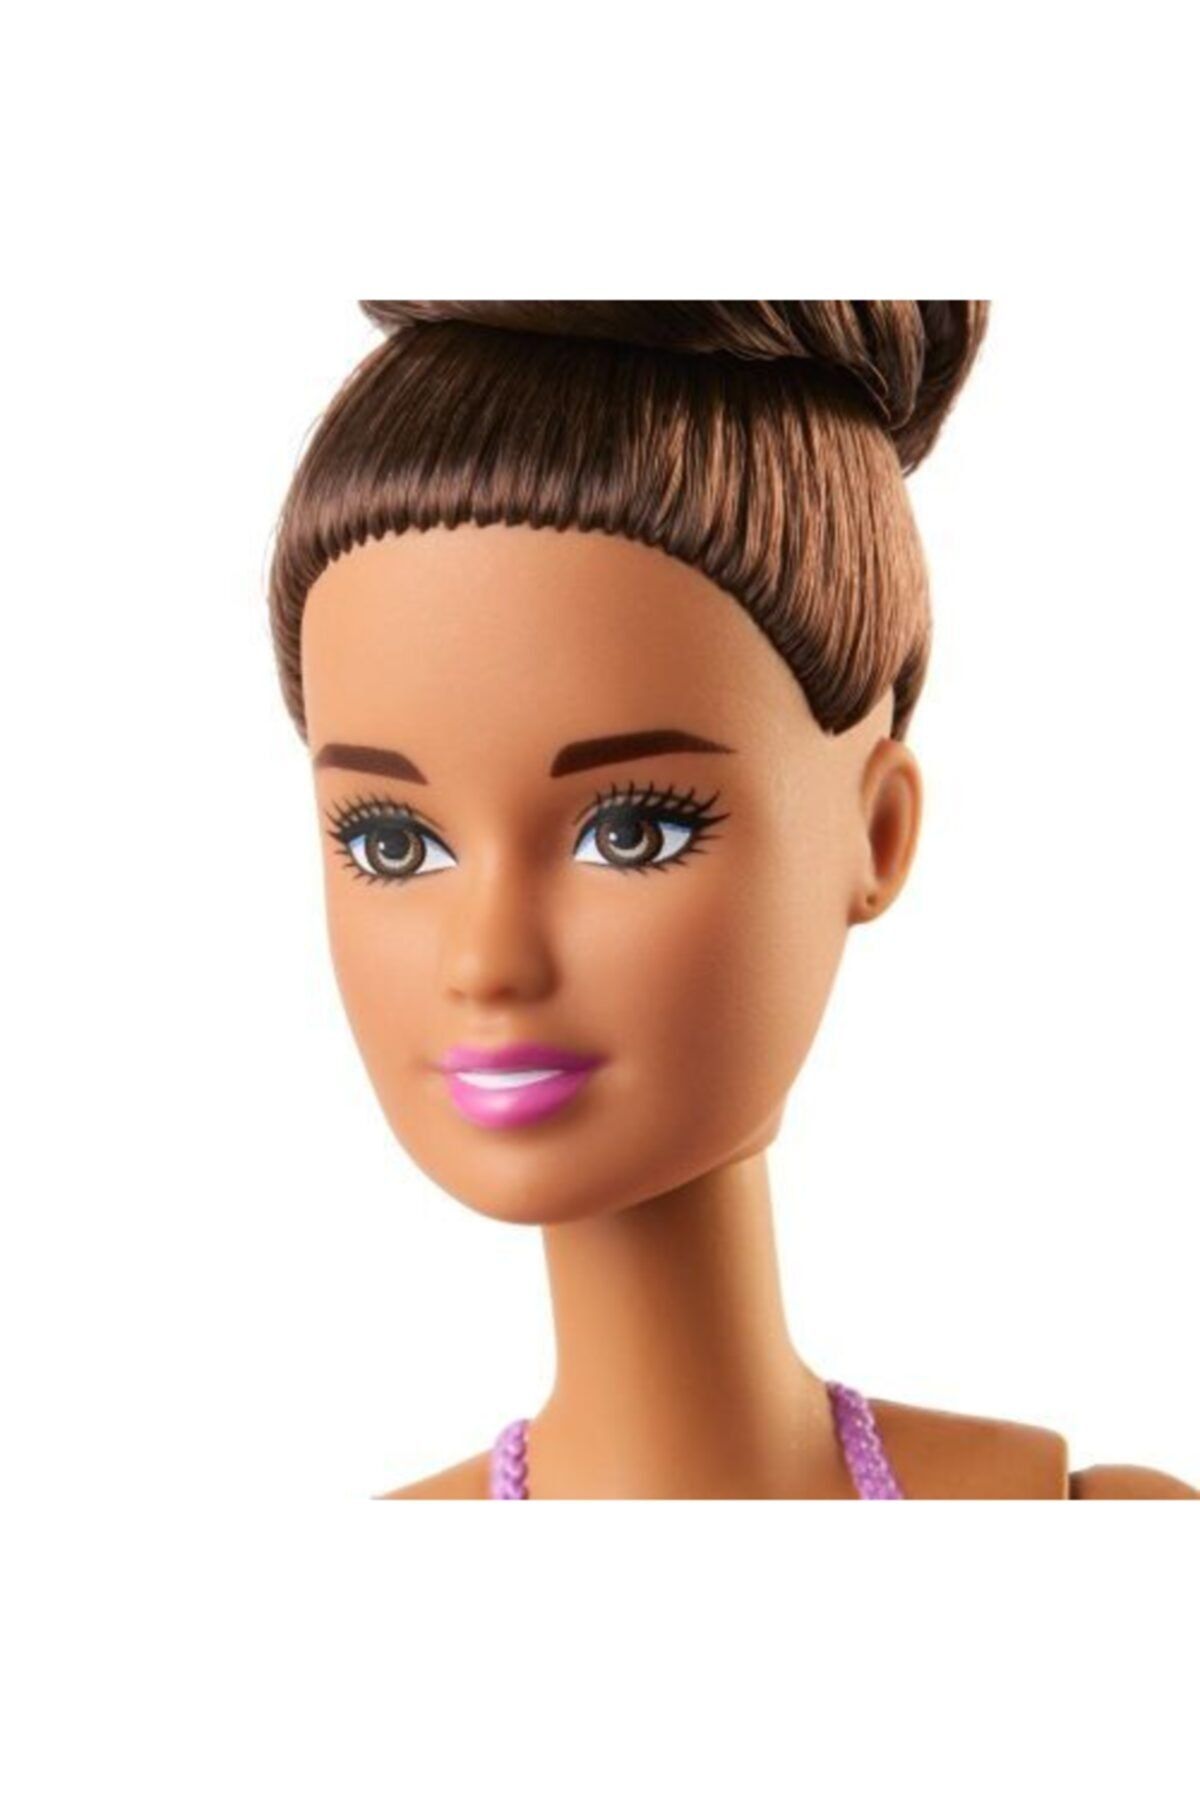 Barbie Balerin Bebekler Siyah Saçlı Gjl60